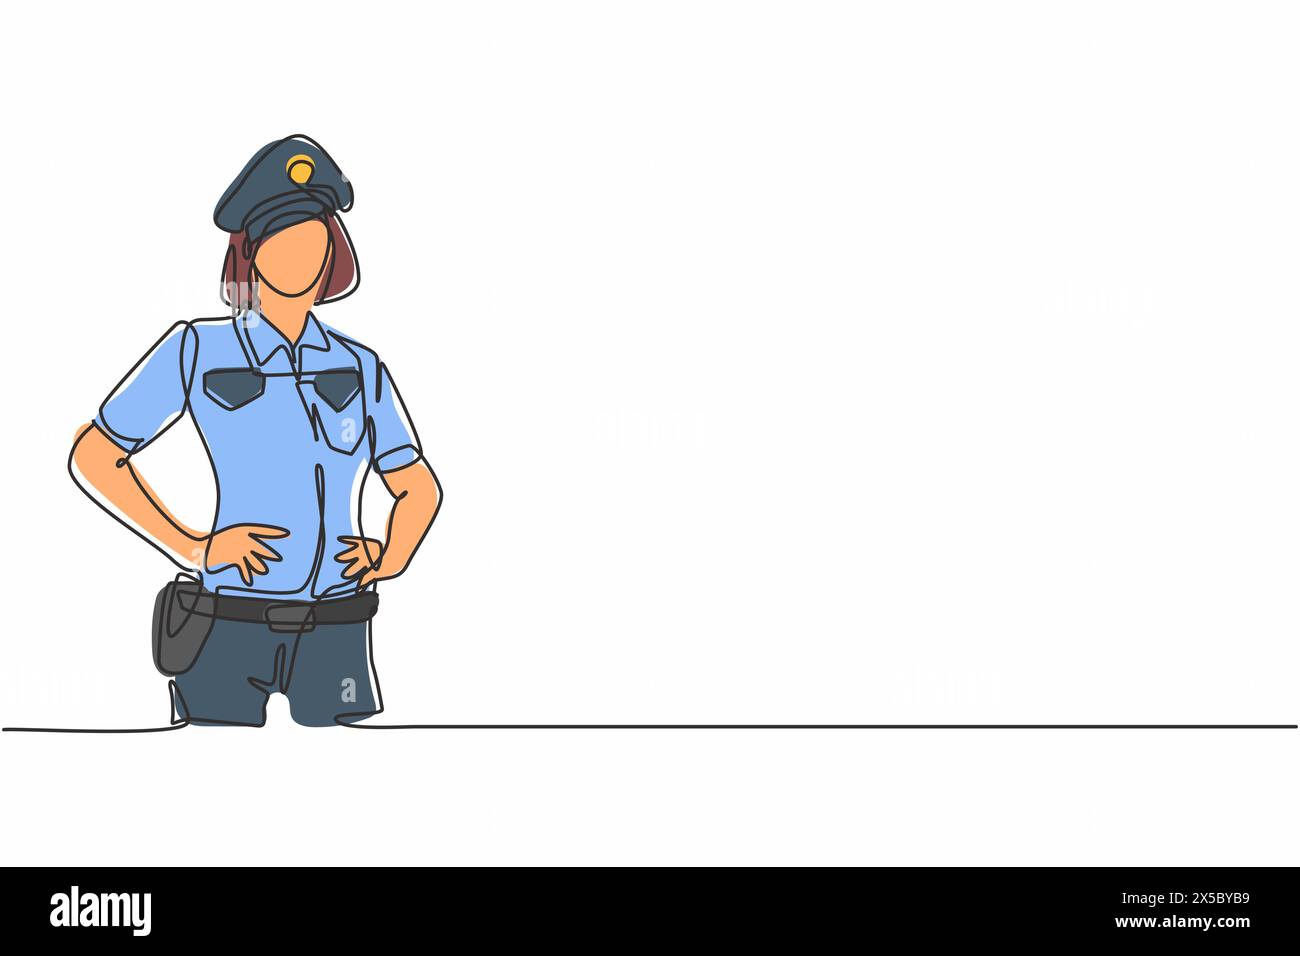 Einzelne durchgehende Linienzeichnung einer jungen, schönen Polizistin auf Uniform, die Hände an der Hüfte hält. Beruflicher Berufsberuf. Minimalismus Konzept o Stock Vektor